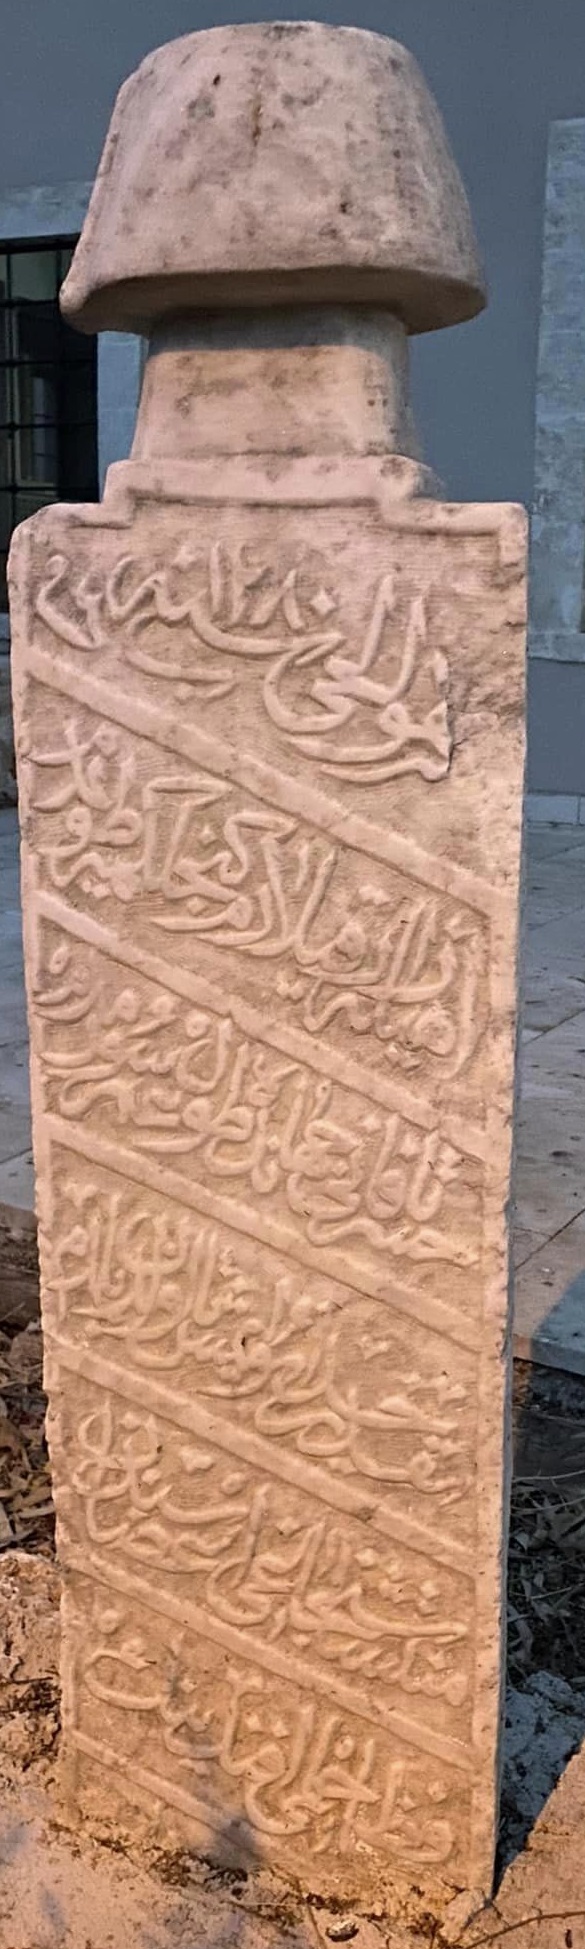 Hâfız Hilmi Efendi Osmanlıca mezar taşı